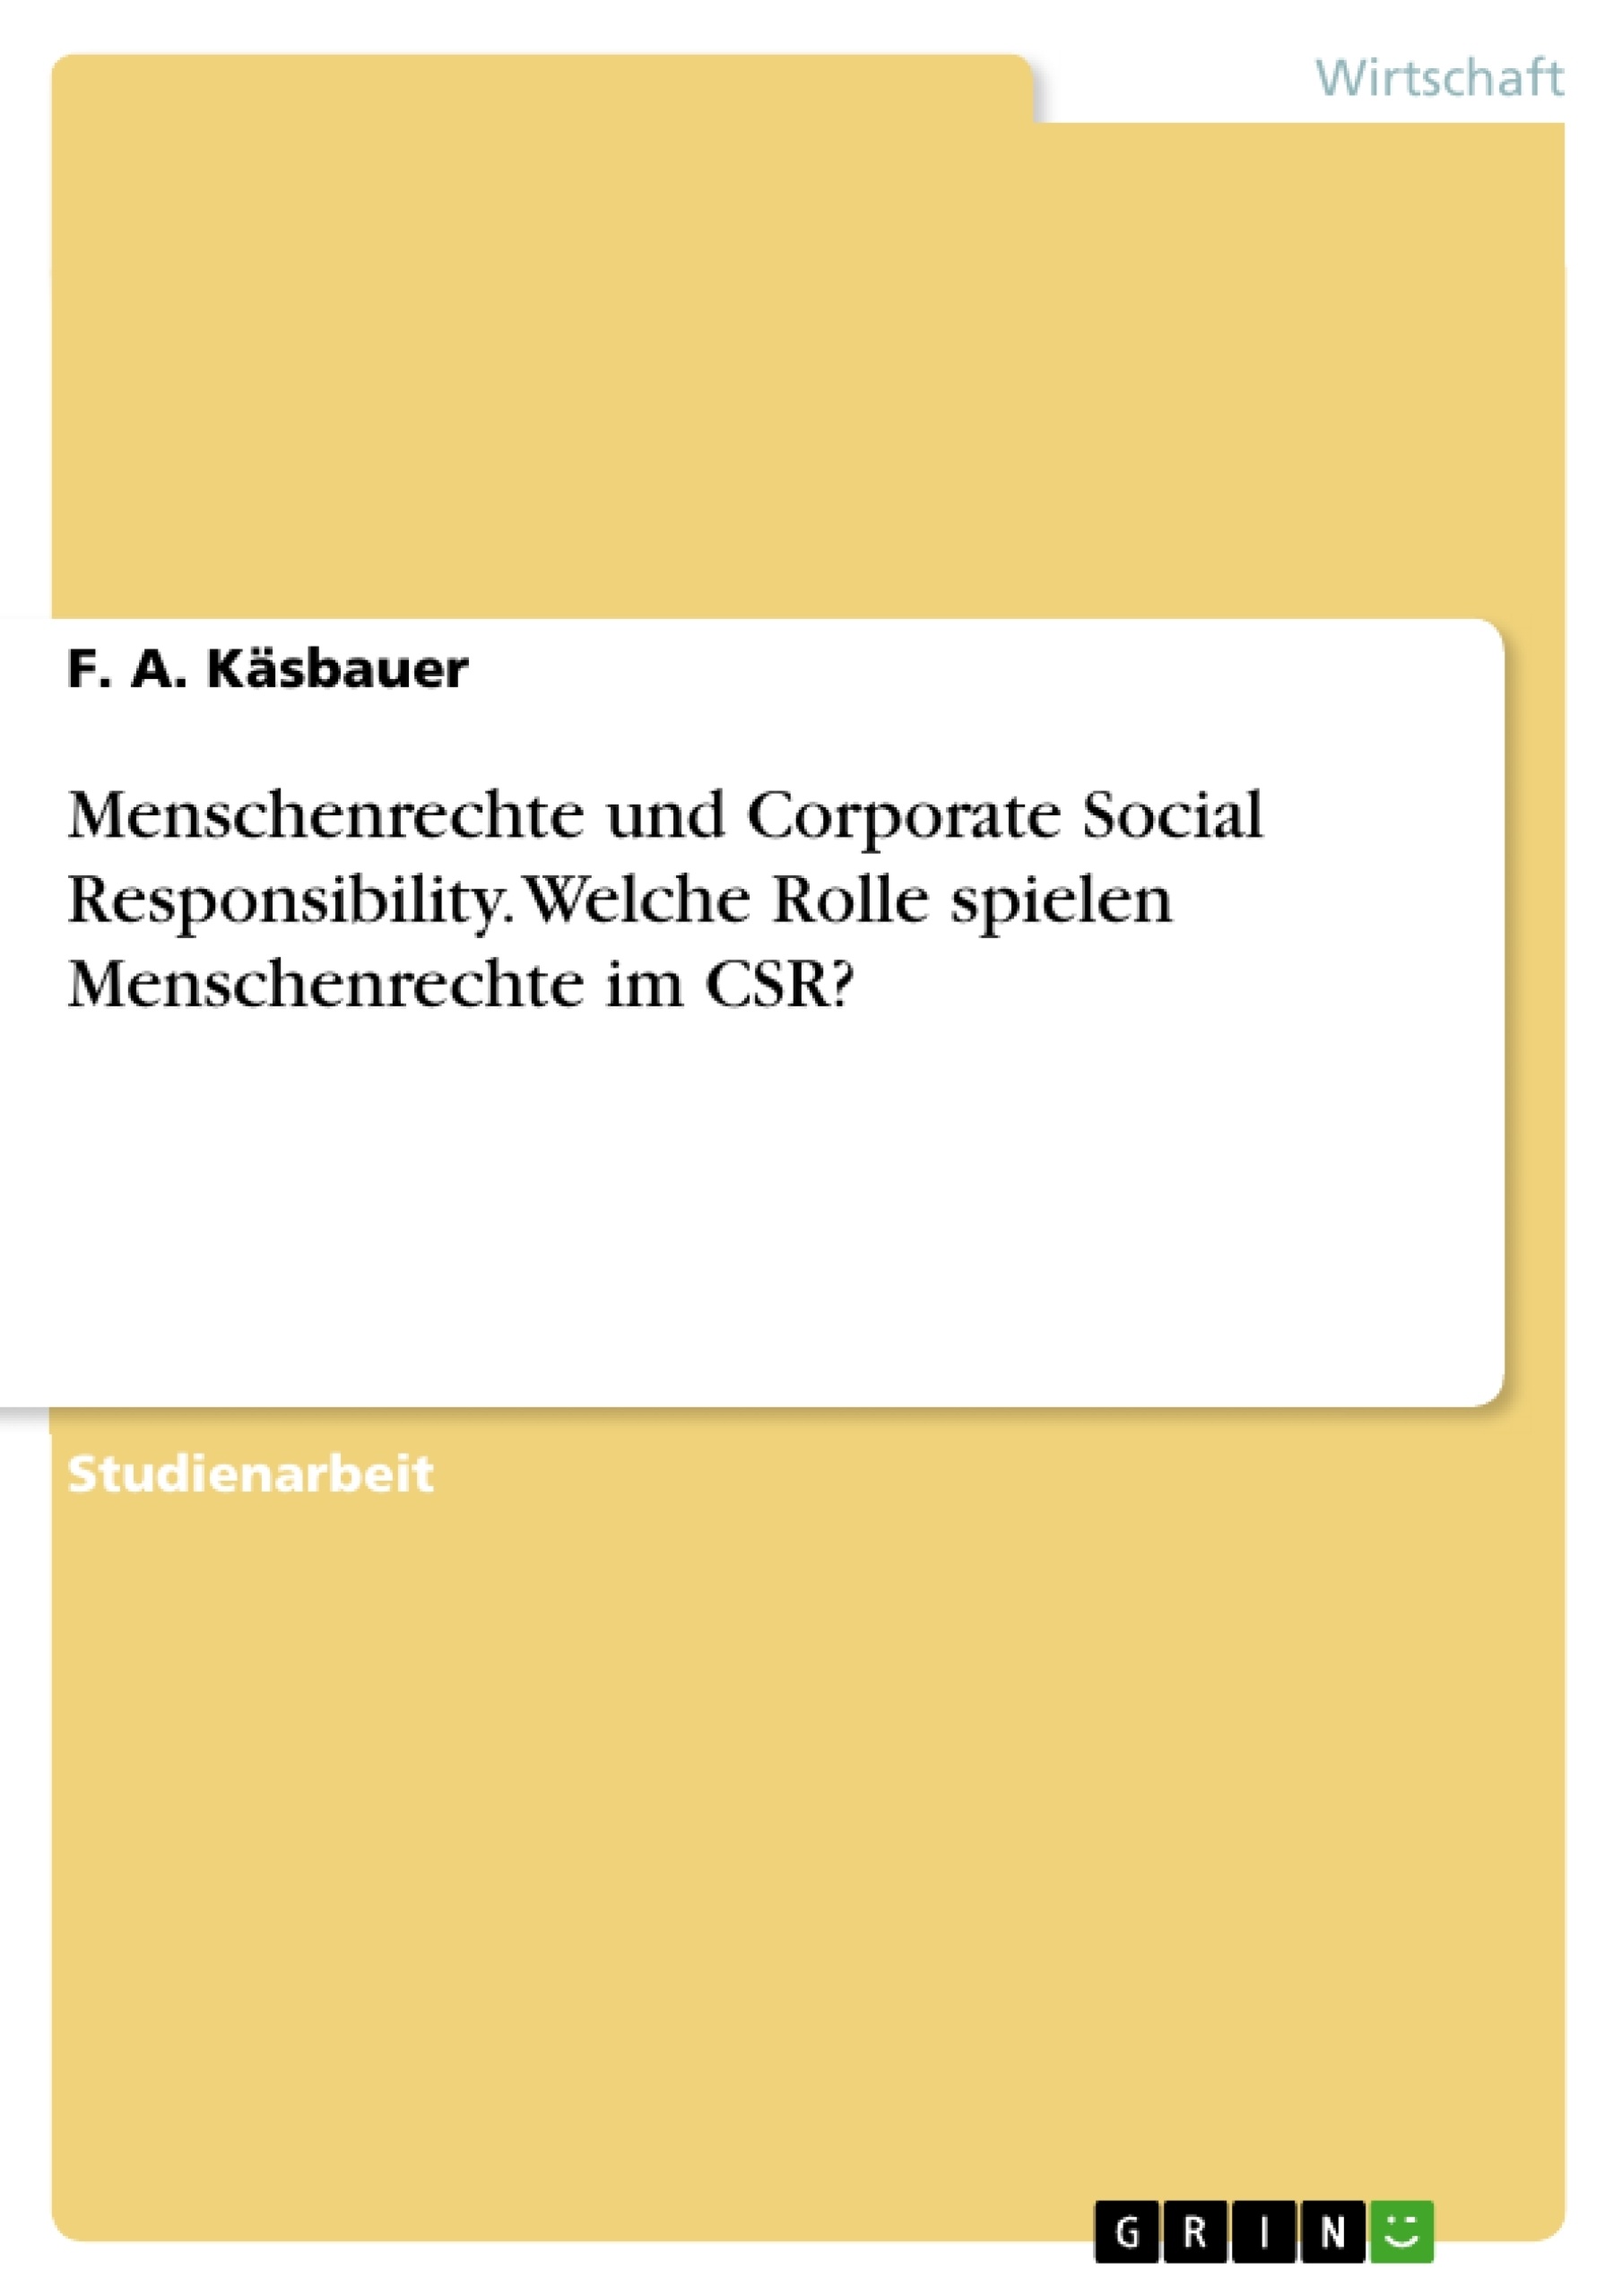 Title: Menschenrechte und Corporate Social Responsibility. Welche Rolle spielen Menschenrechte im CSR?